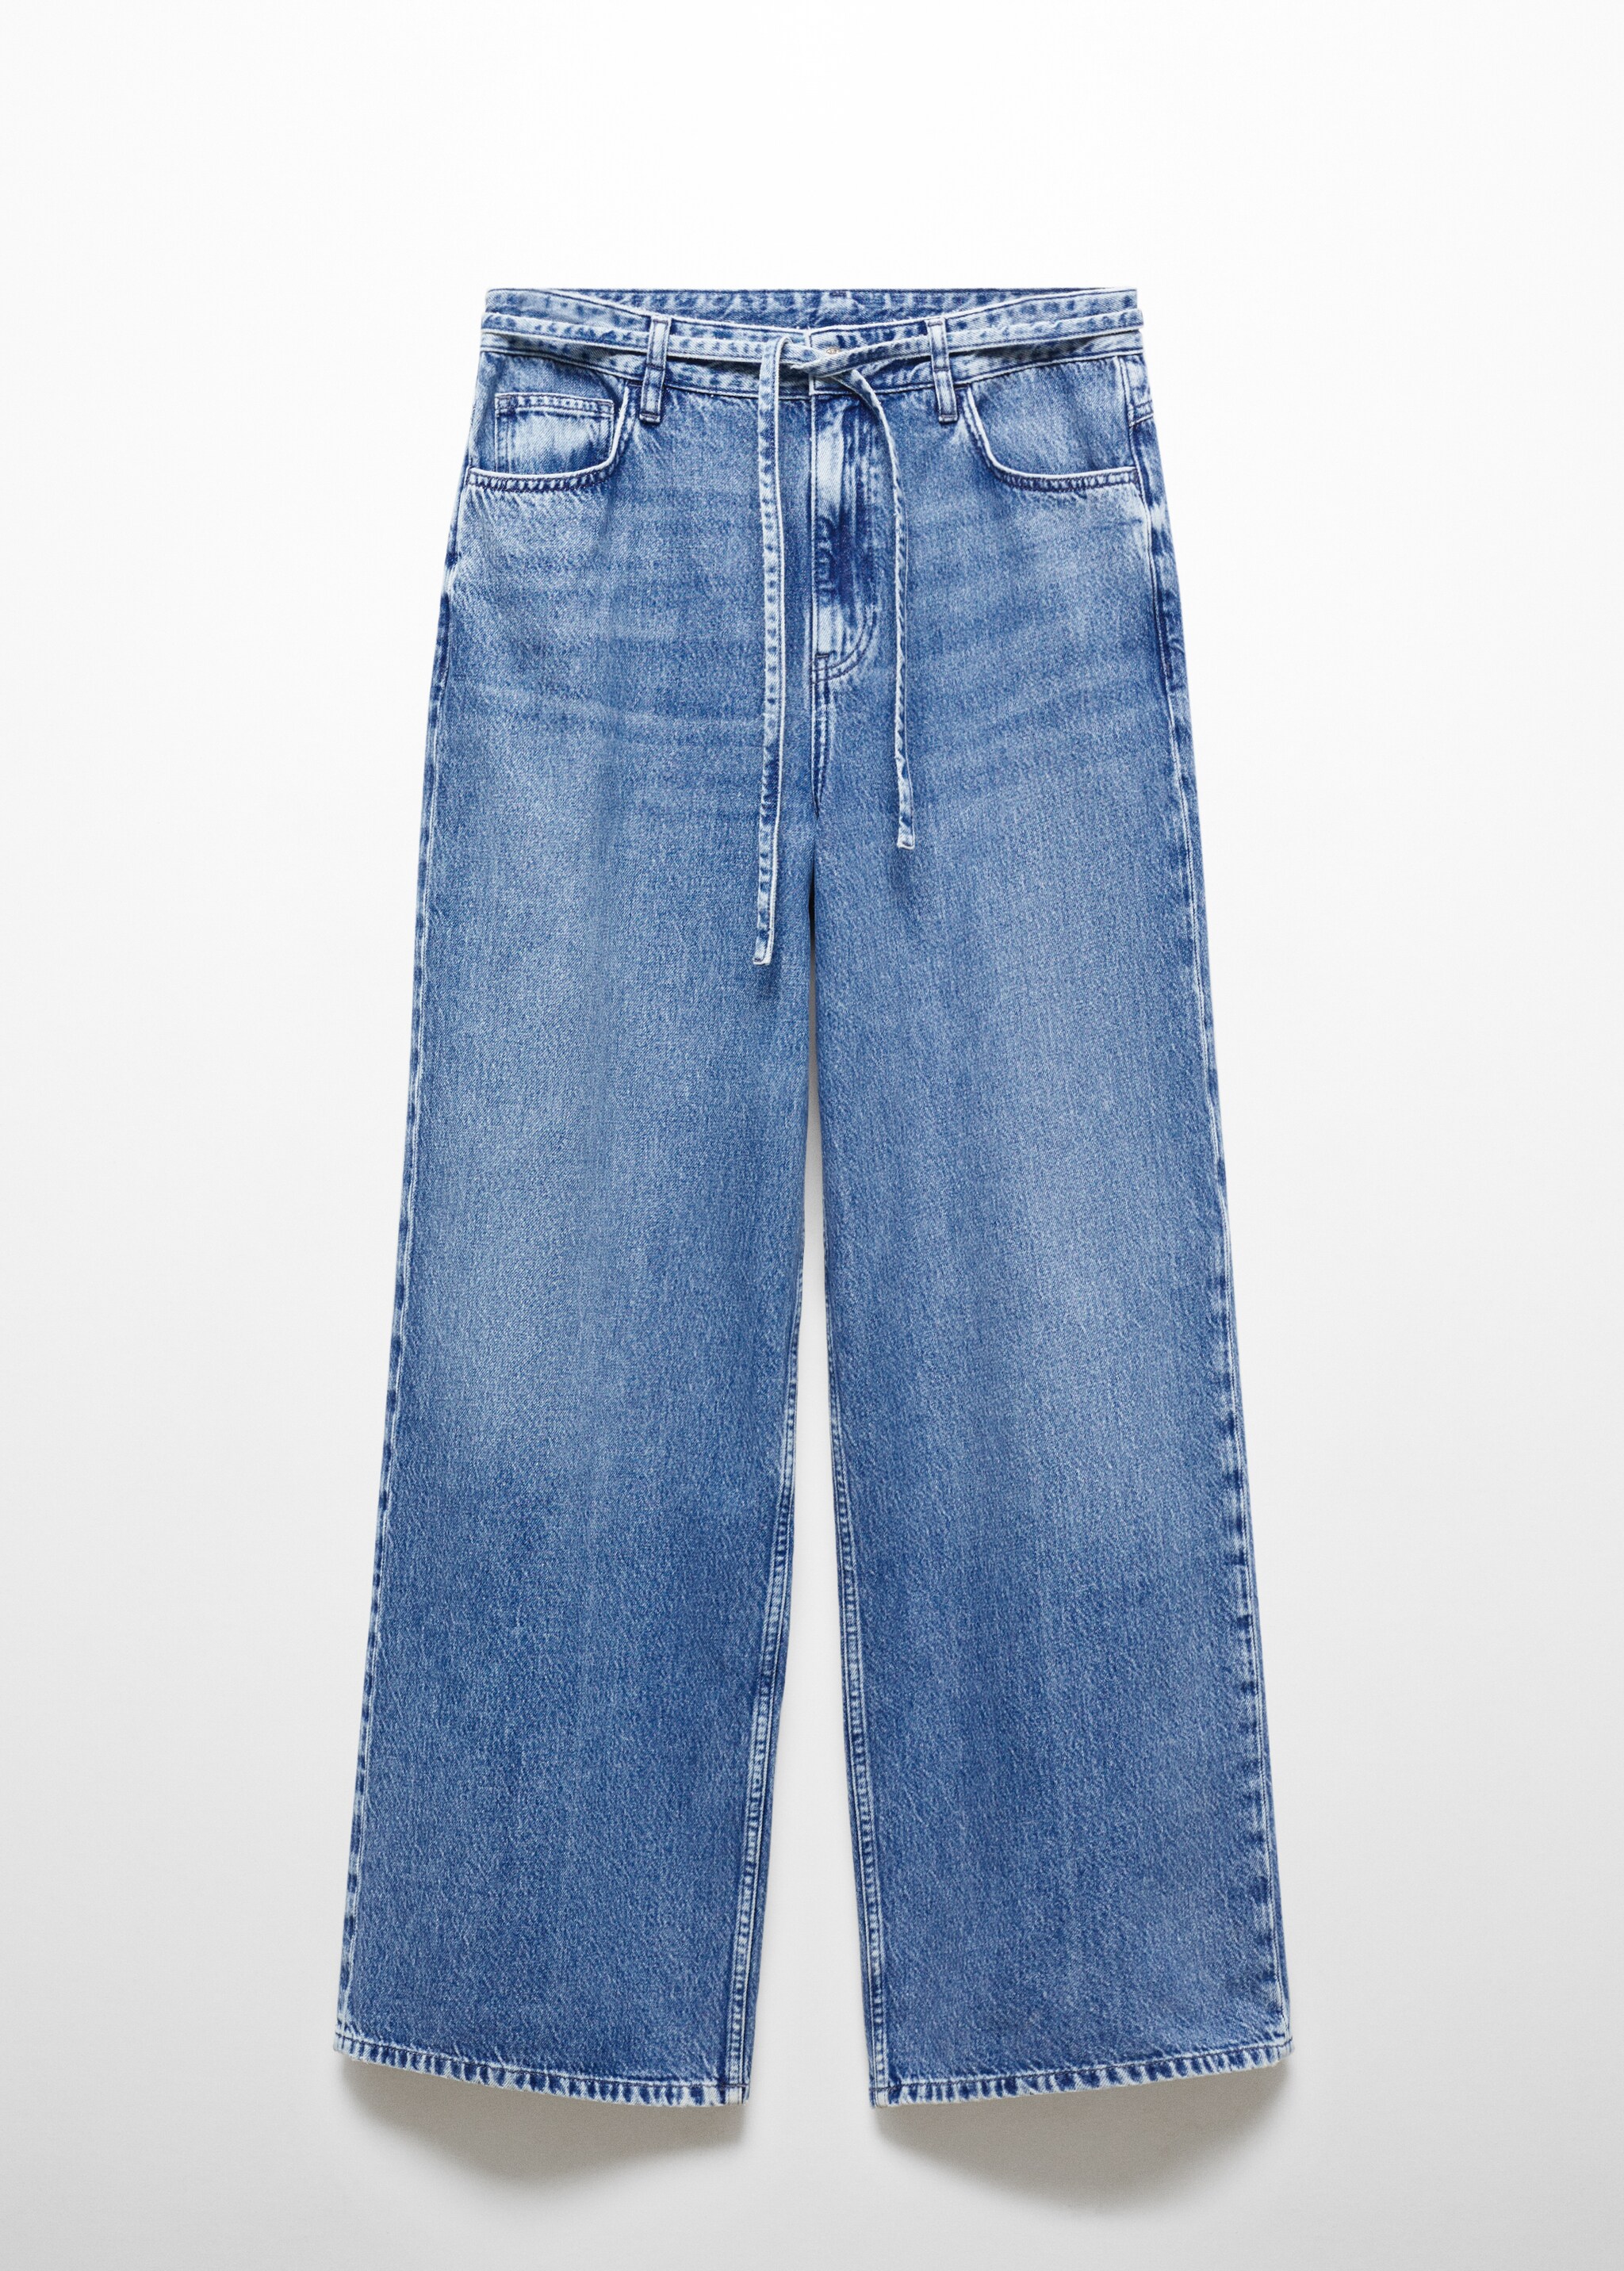 Jeans wideleg loose cordón ajustable - Artículo sin modelo